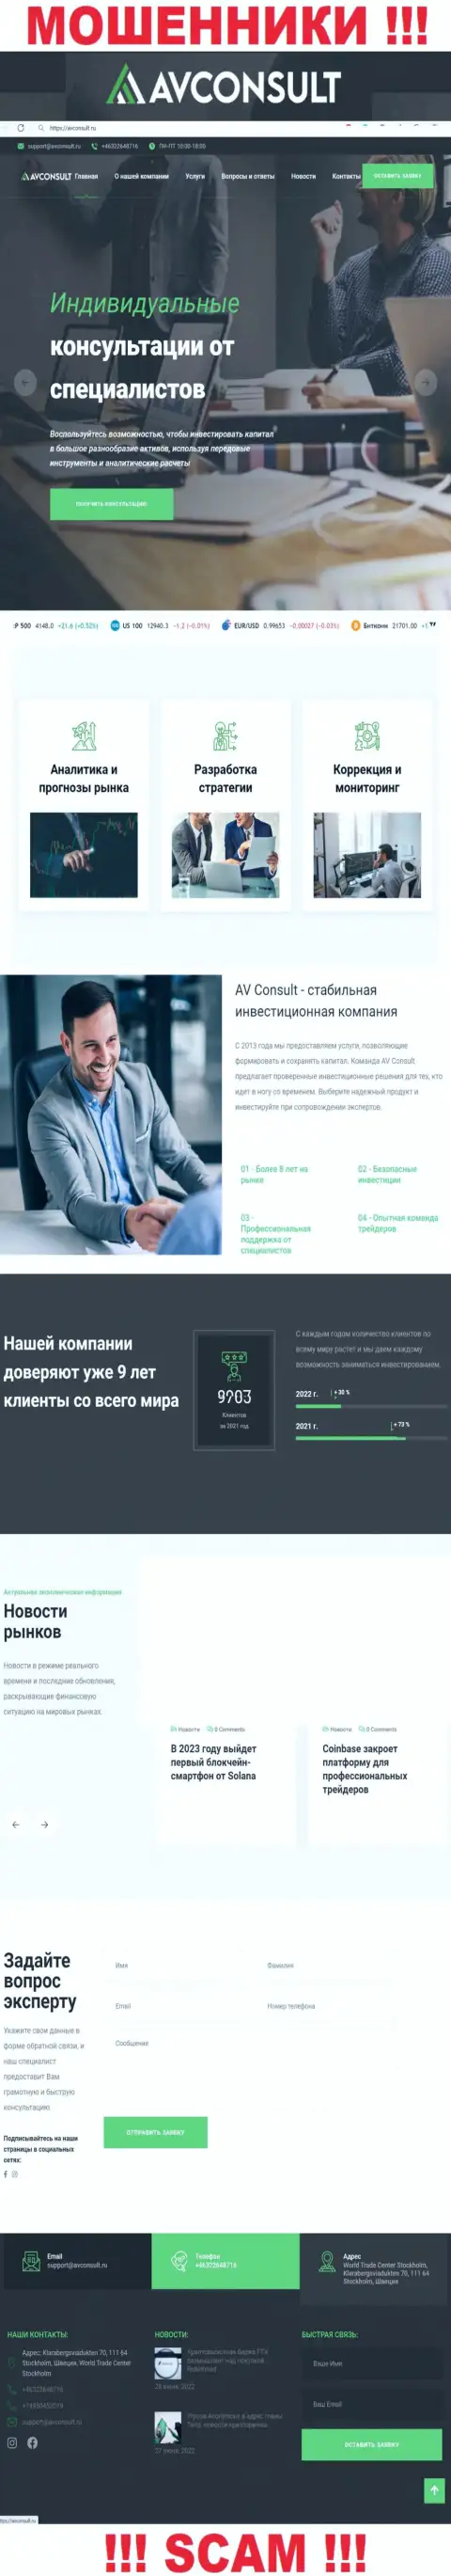 Ложная инфа от компании AVConsult Ru на официальном сайте мошенников